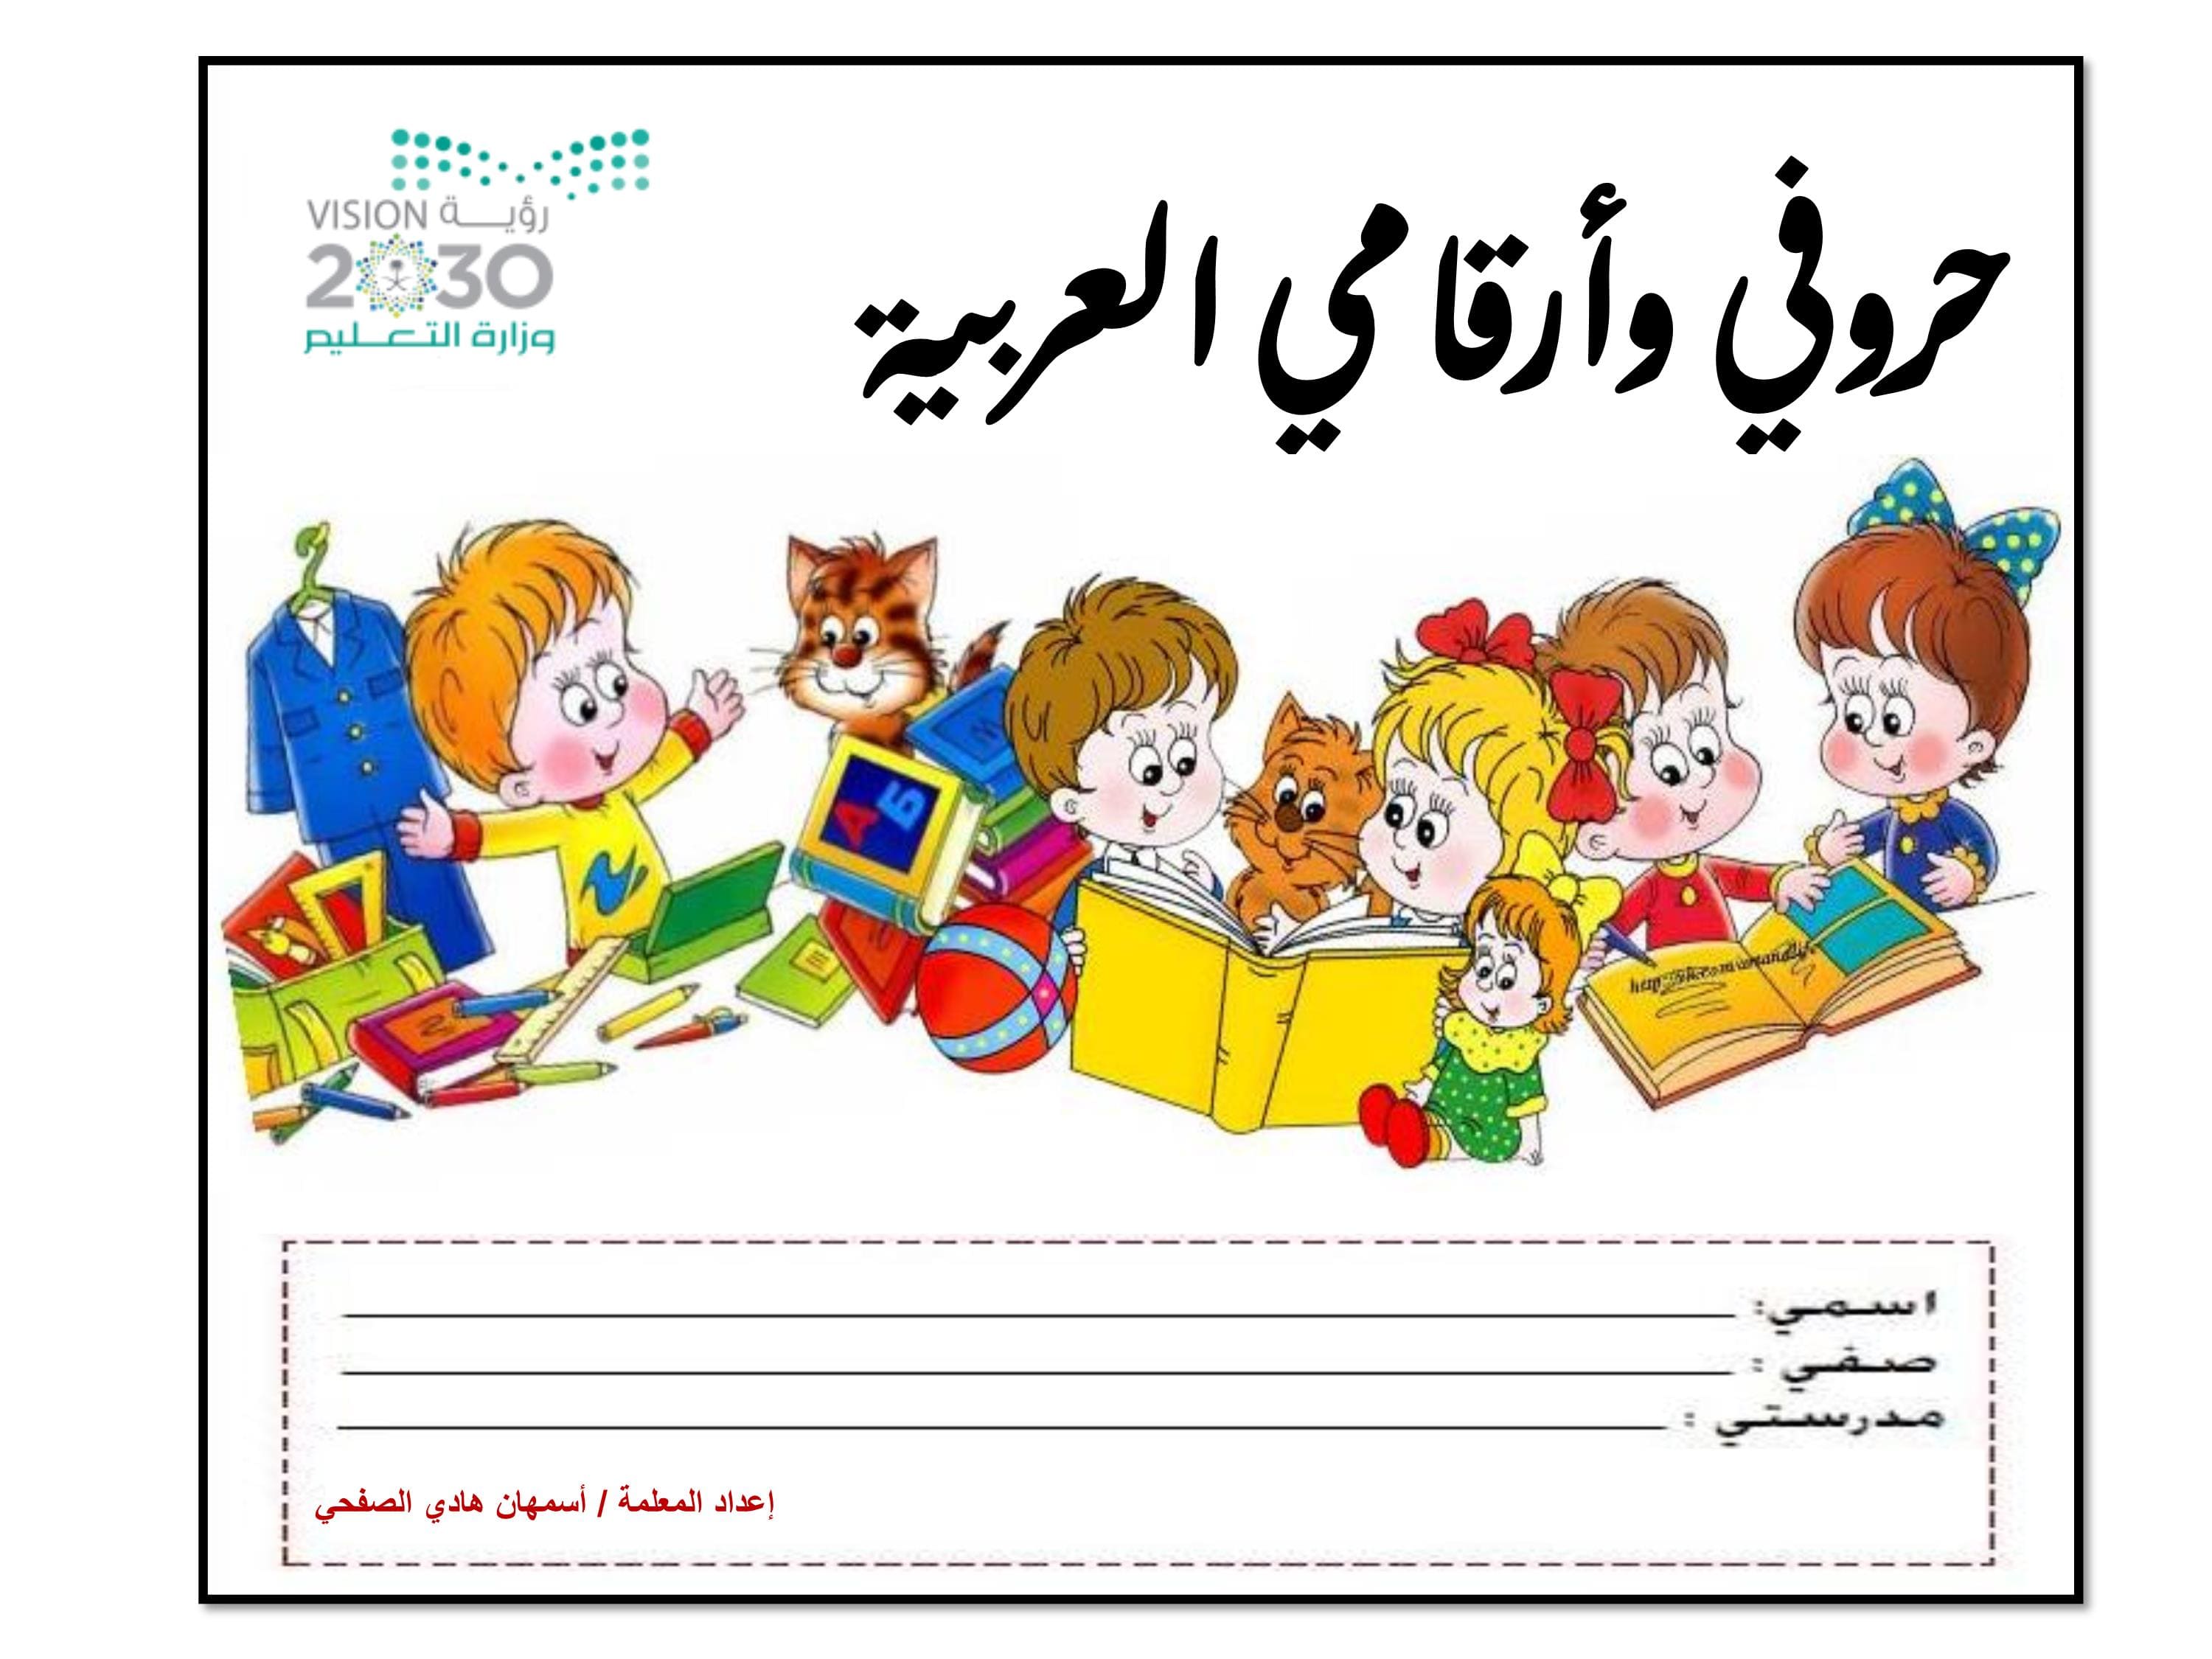 مذكرة حروفي وارقامي العربية لتعليم الاطفال بطريقة ممتعة